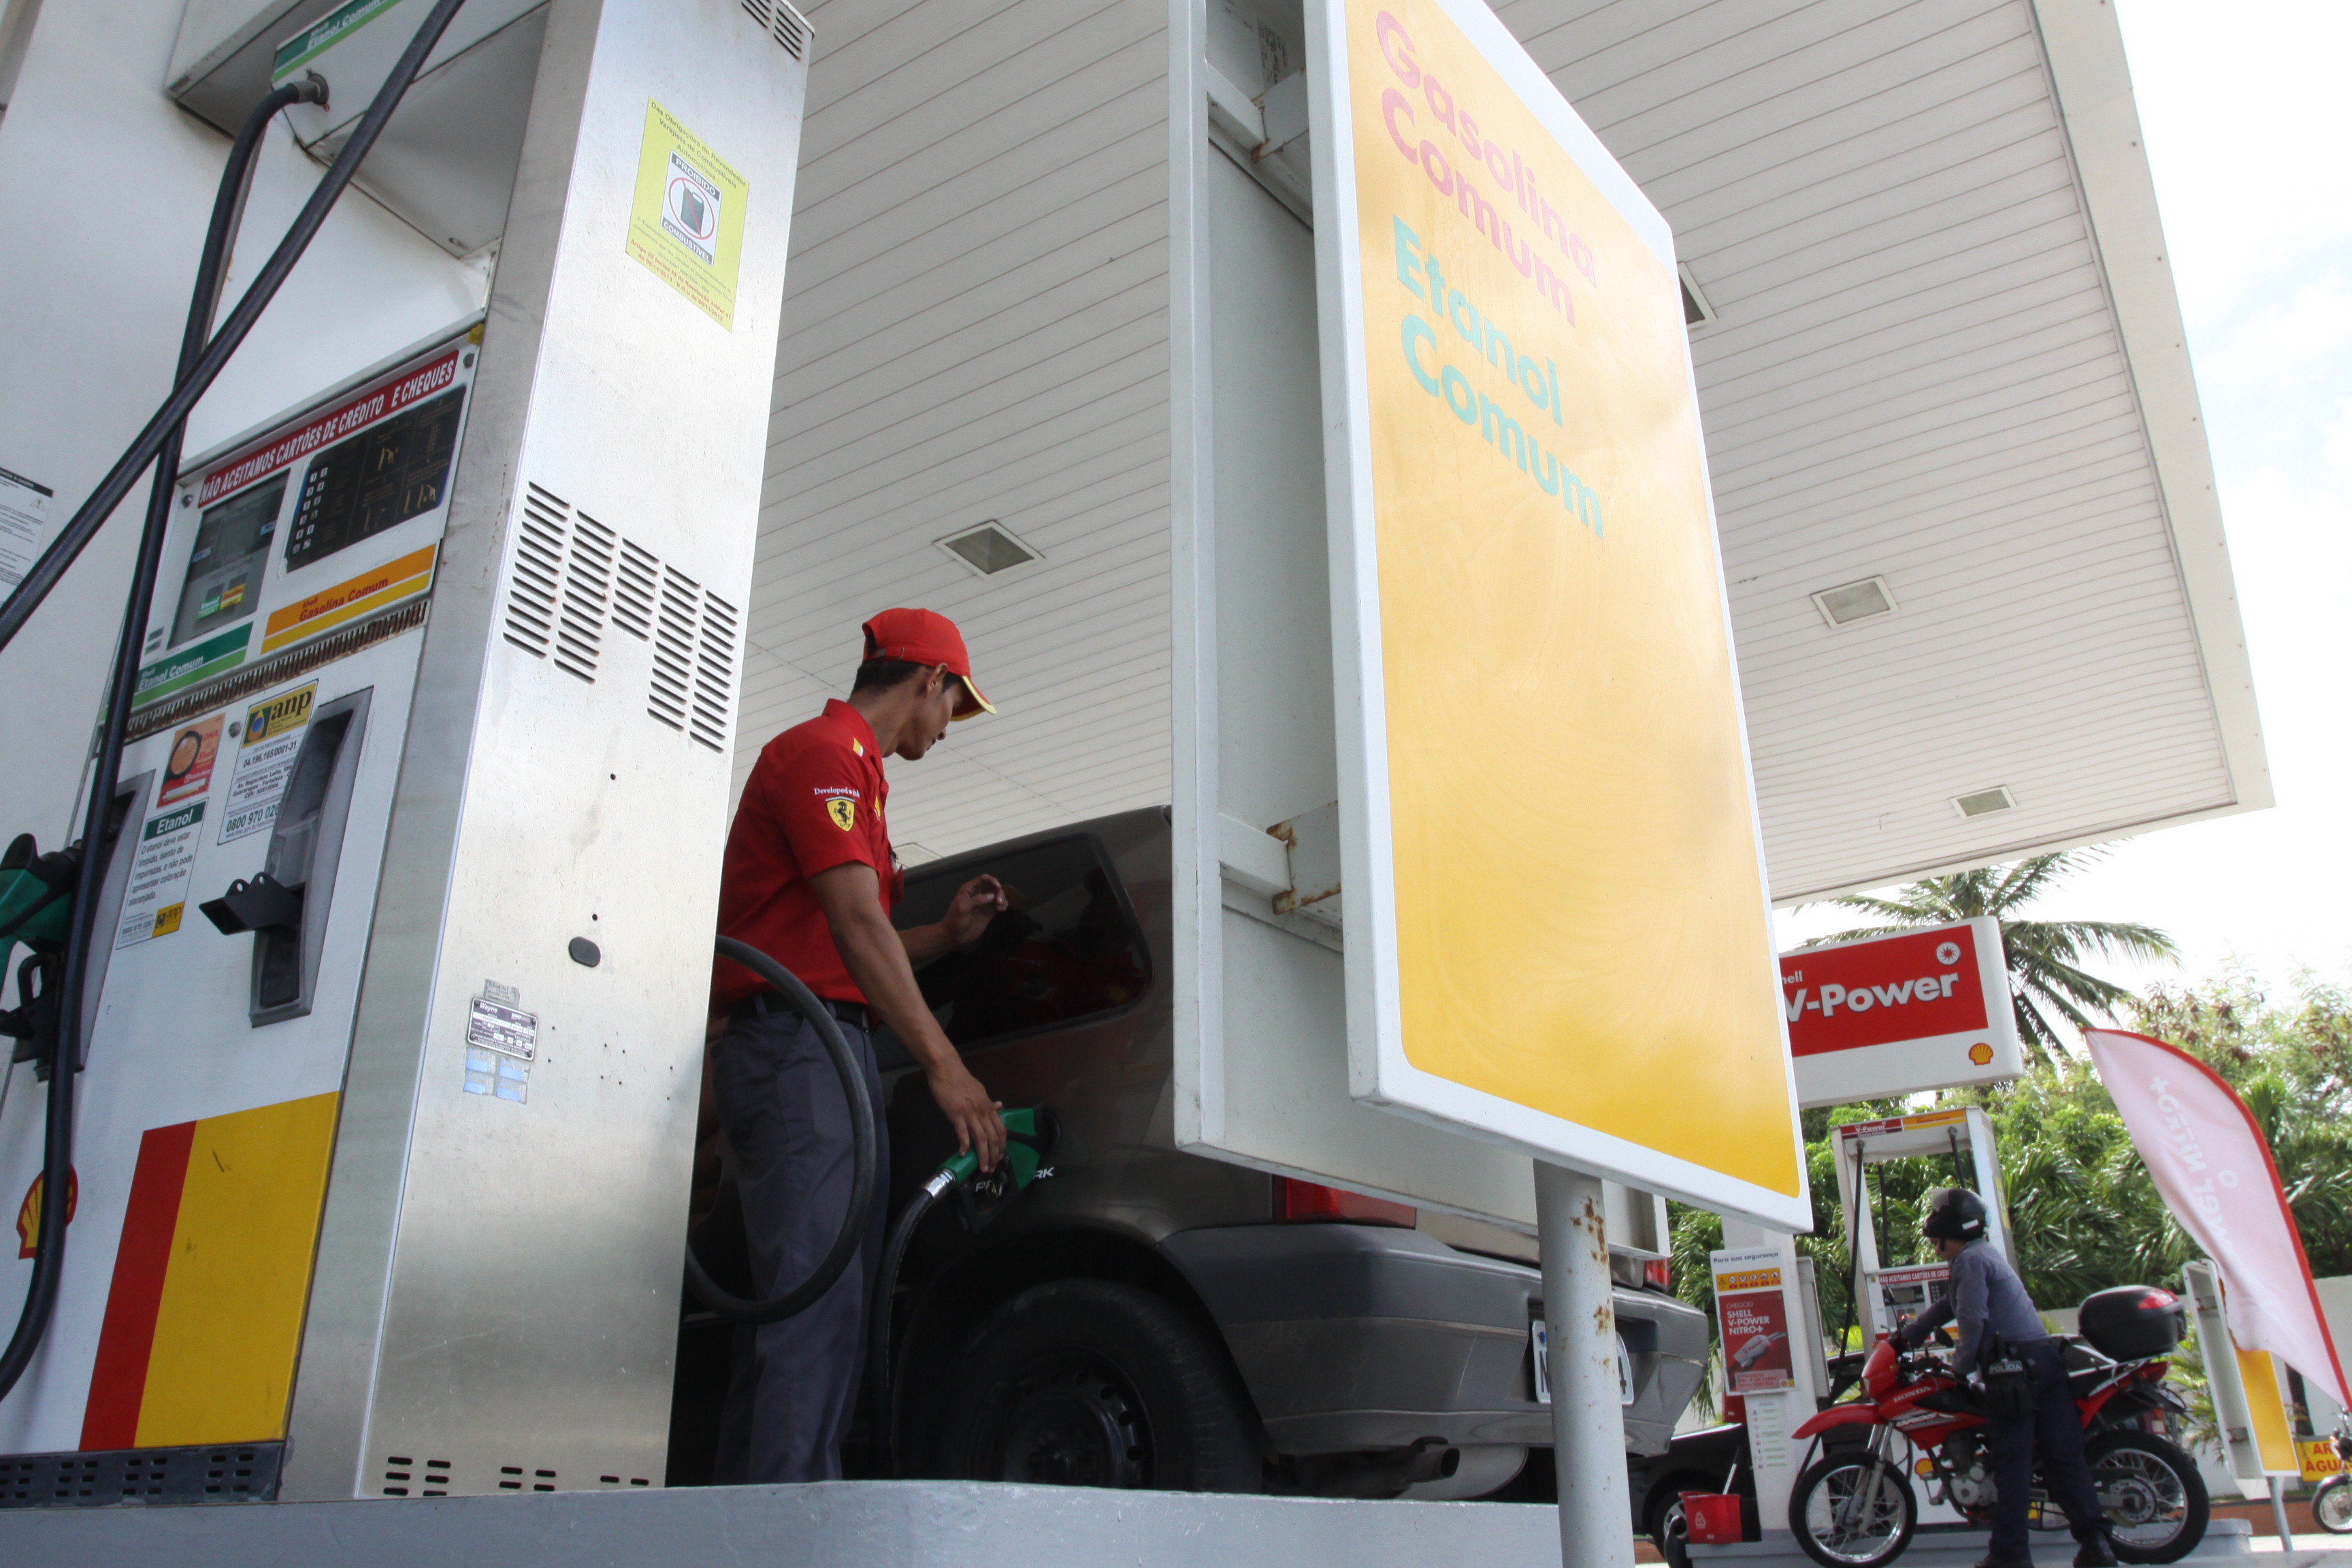 Petrobras Distribuidora já reduz preço do diesel em postos da rede